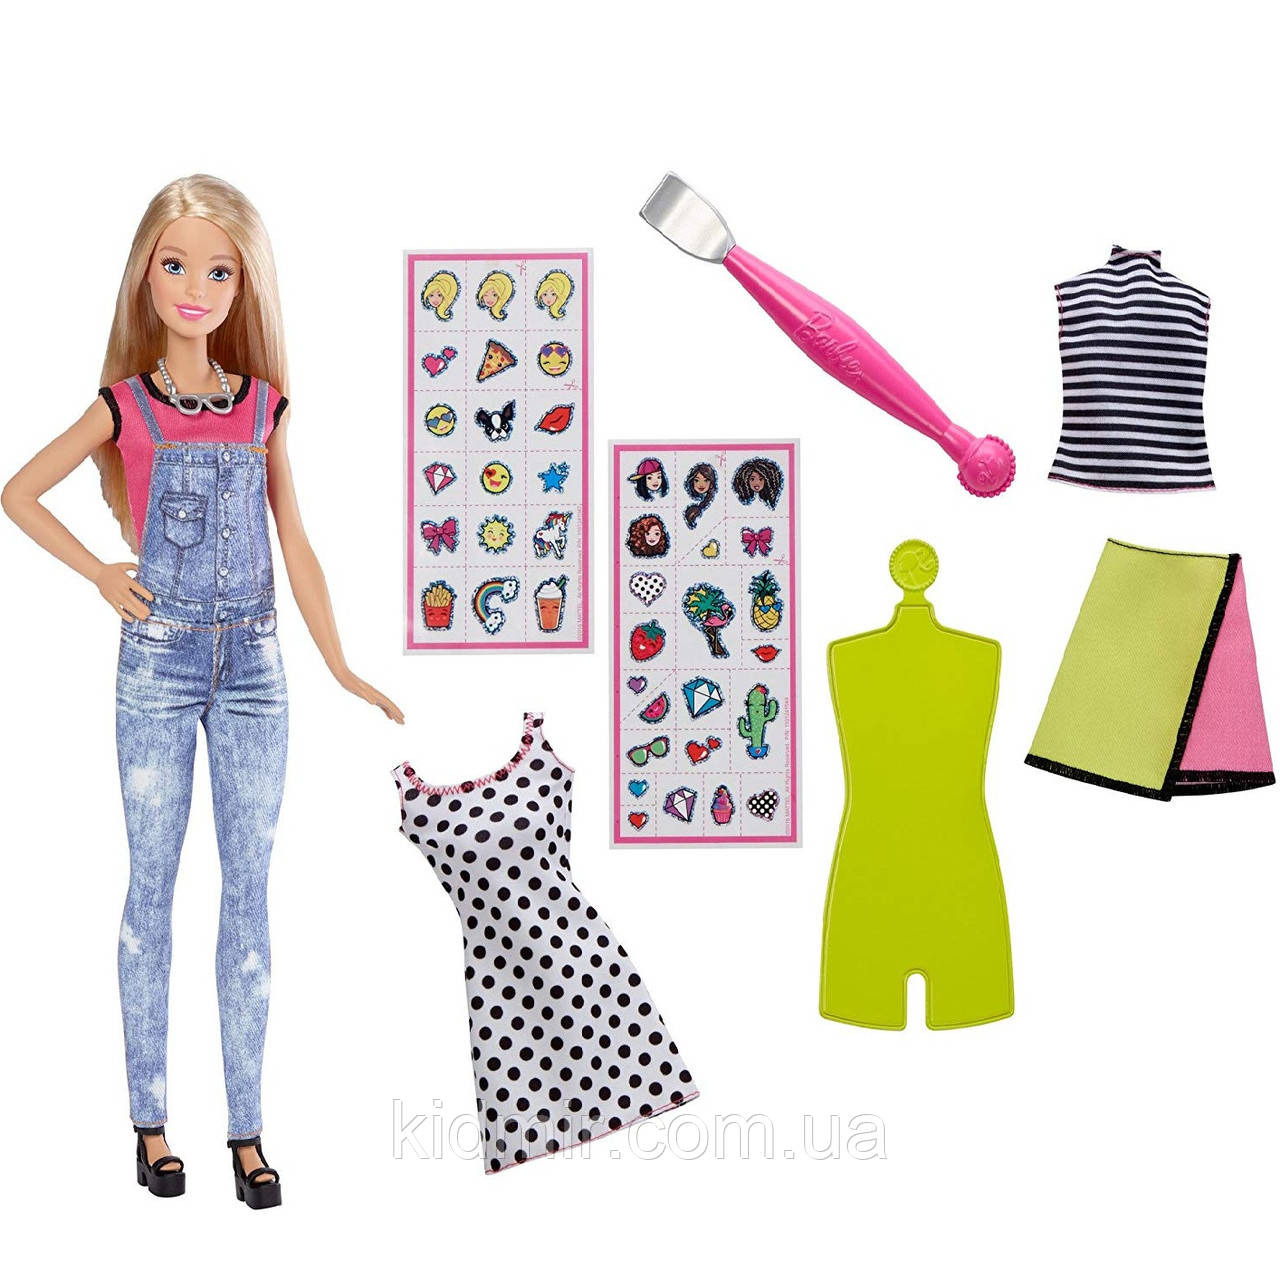 Лялька Барбі Эмоджи дизайнер Barbie D. I. Y. Emoji Style DYN93